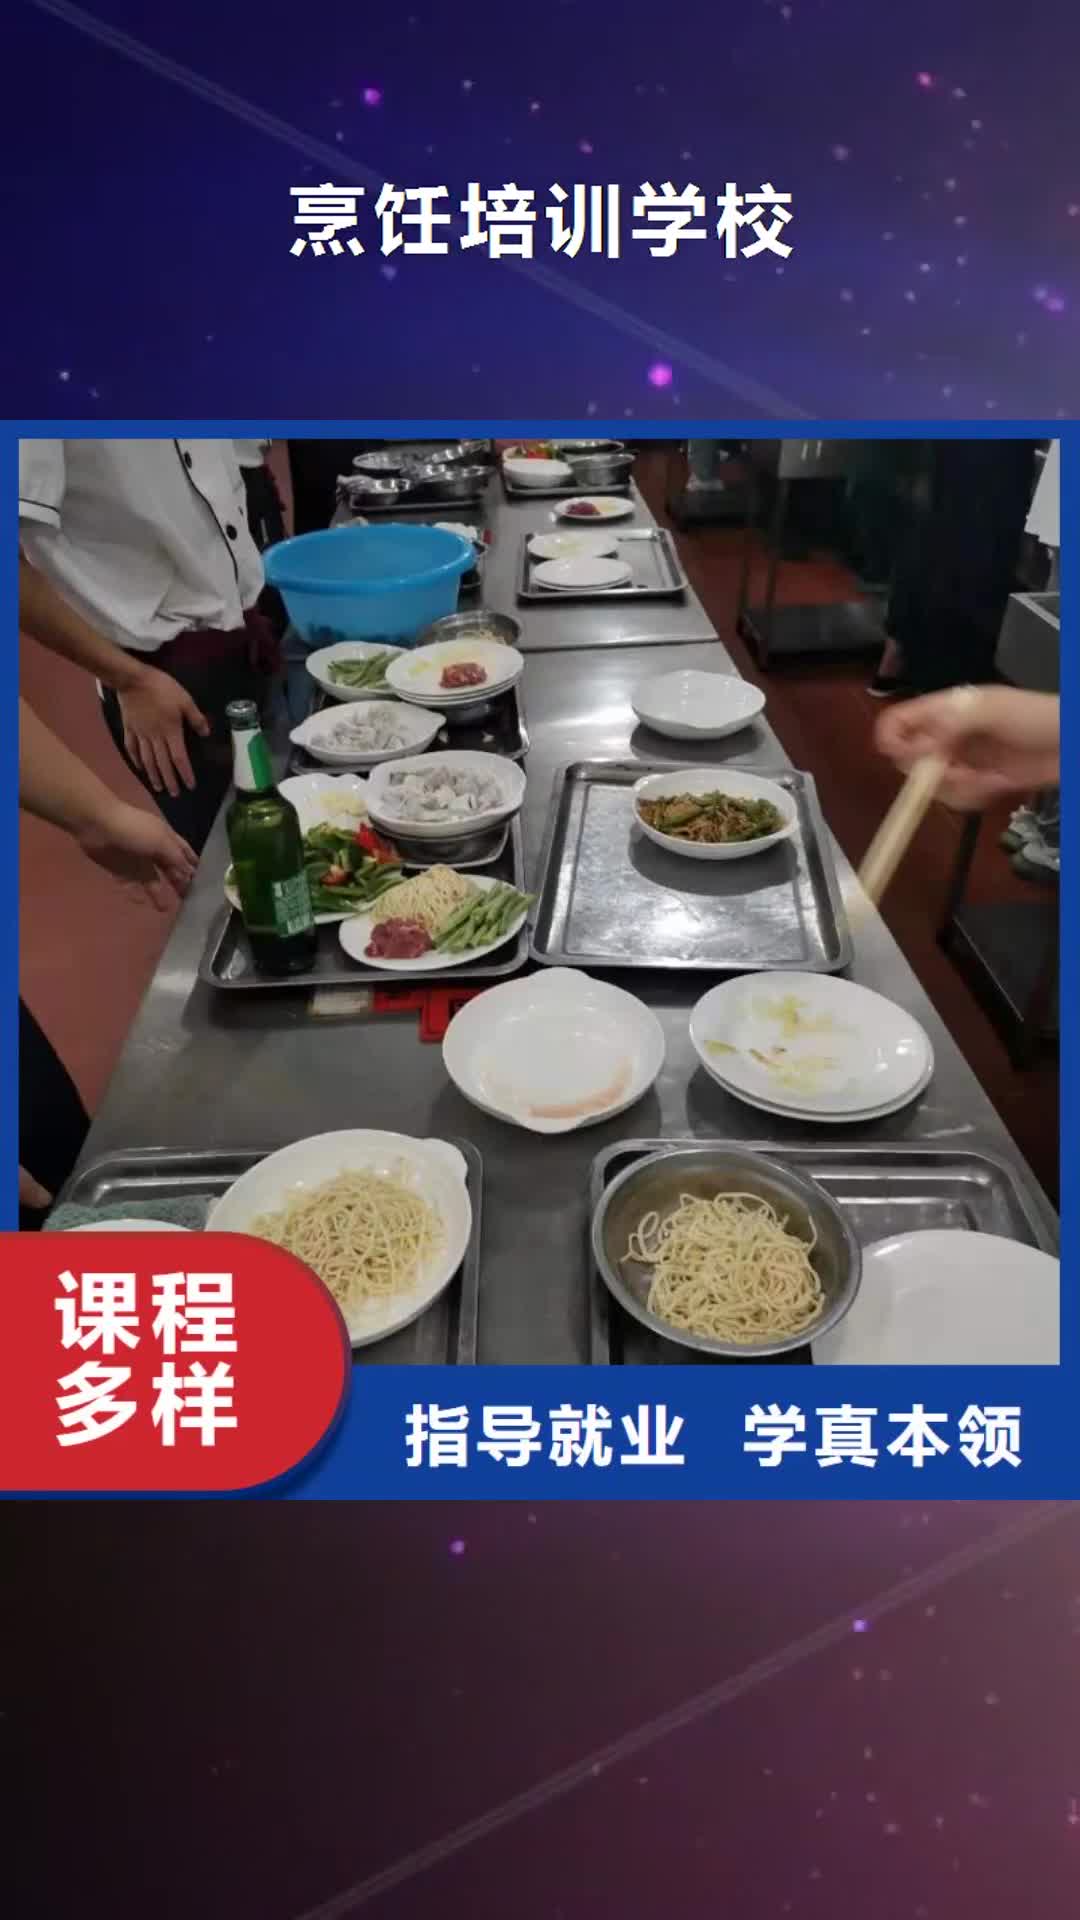 通化【烹饪培训学校】_厨师培训学校师资力量强